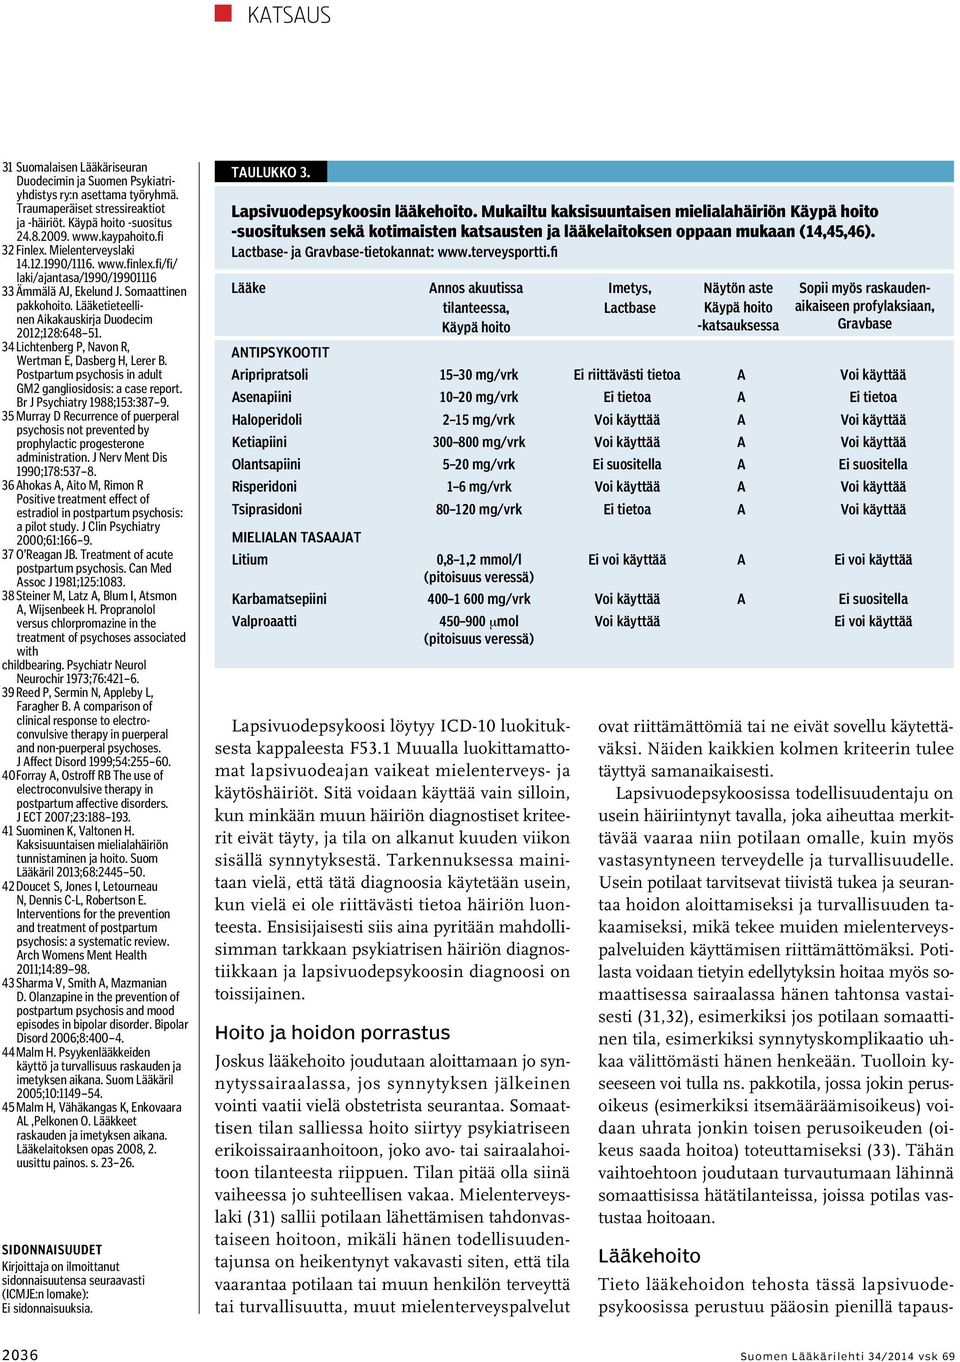 Lääketieteellinen Aikakauskirja Duodecim 2012;128:648 51. 34 Lichtenberg P, Navon R, Wertman E, Dasberg H, Lerer B. Postpartum psychosis in adult GM2 gangliosidosis: a case report.